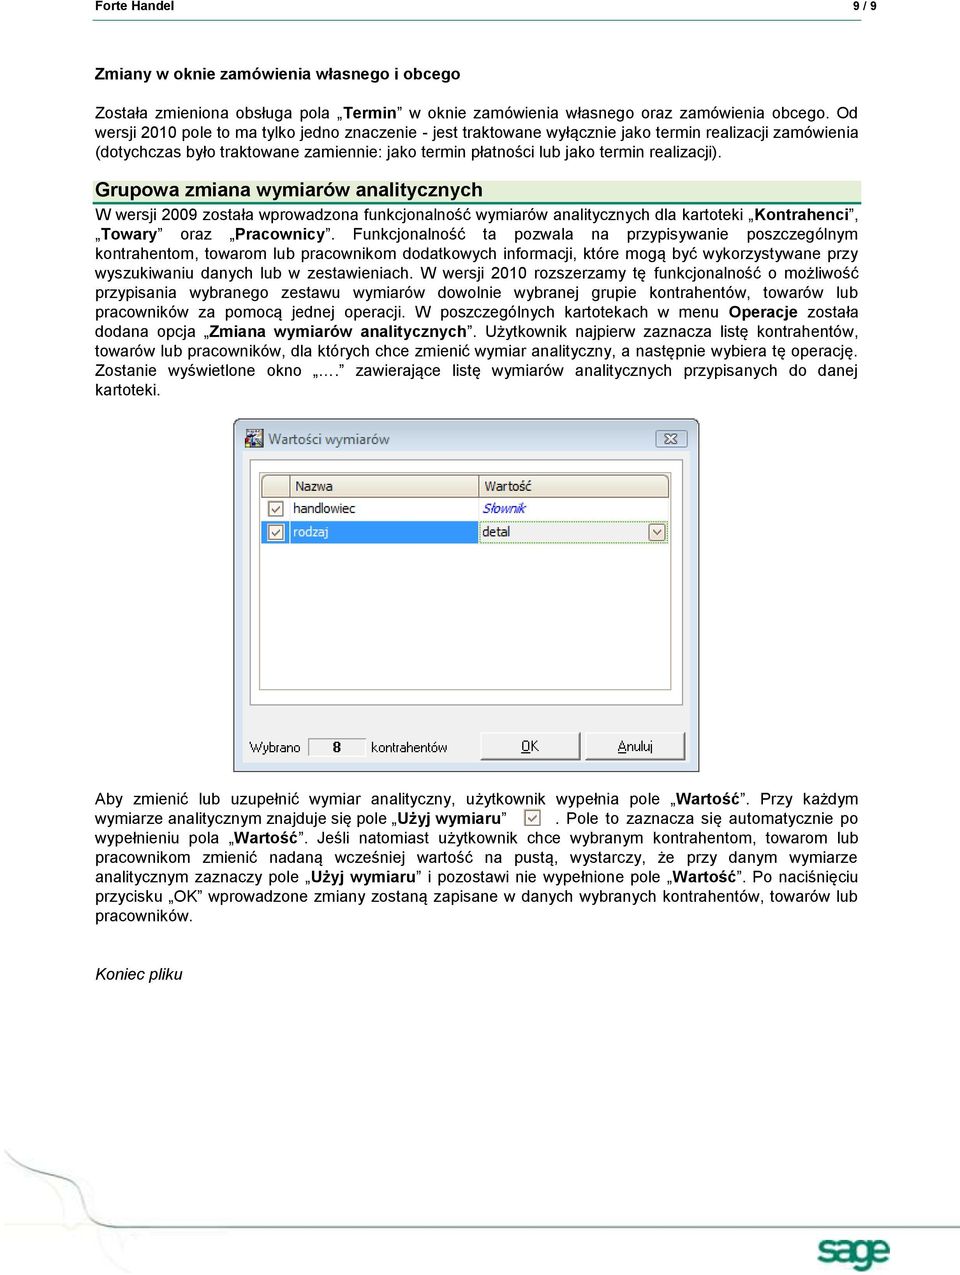 Grupowa zmiana wymiarów analitycznych W wersji 2009 została wprowadzona funkcjonalność wymiarów analitycznych dla kartoteki Kontrahenci, Towary oraz Pracownicy.